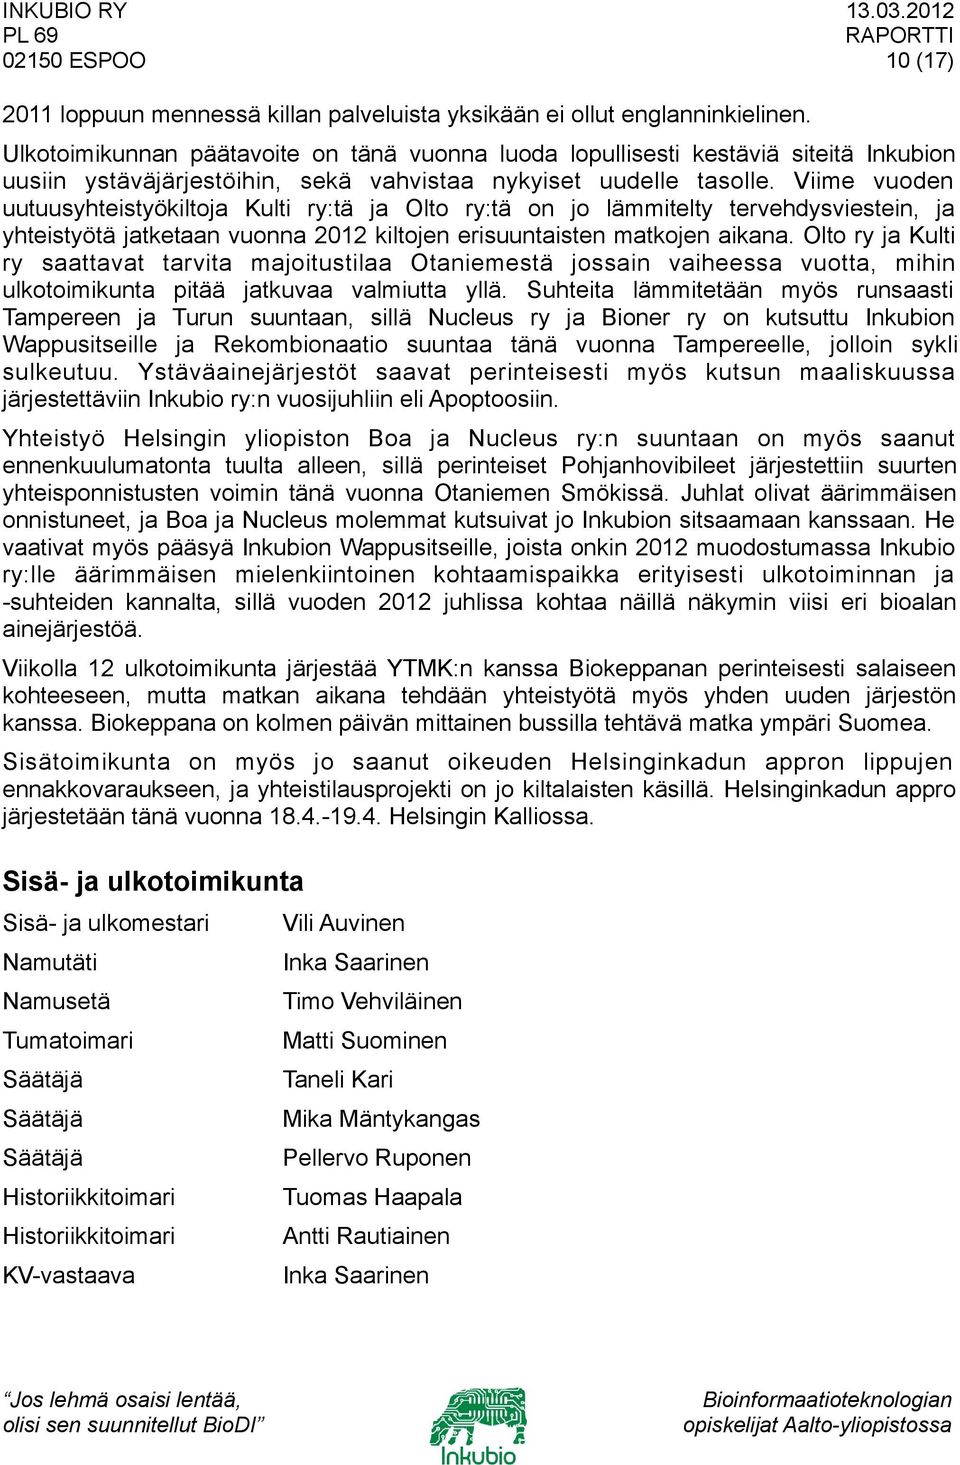 Viime vuoden uutuusyhteistyökiltoja Kulti ry:tä ja Olto ry:tä on jo lämmitelty tervehdysviestein, ja yhteistyötä jatketaan vuonna 2012 kiltojen erisuuntaisten matkojen aikana.